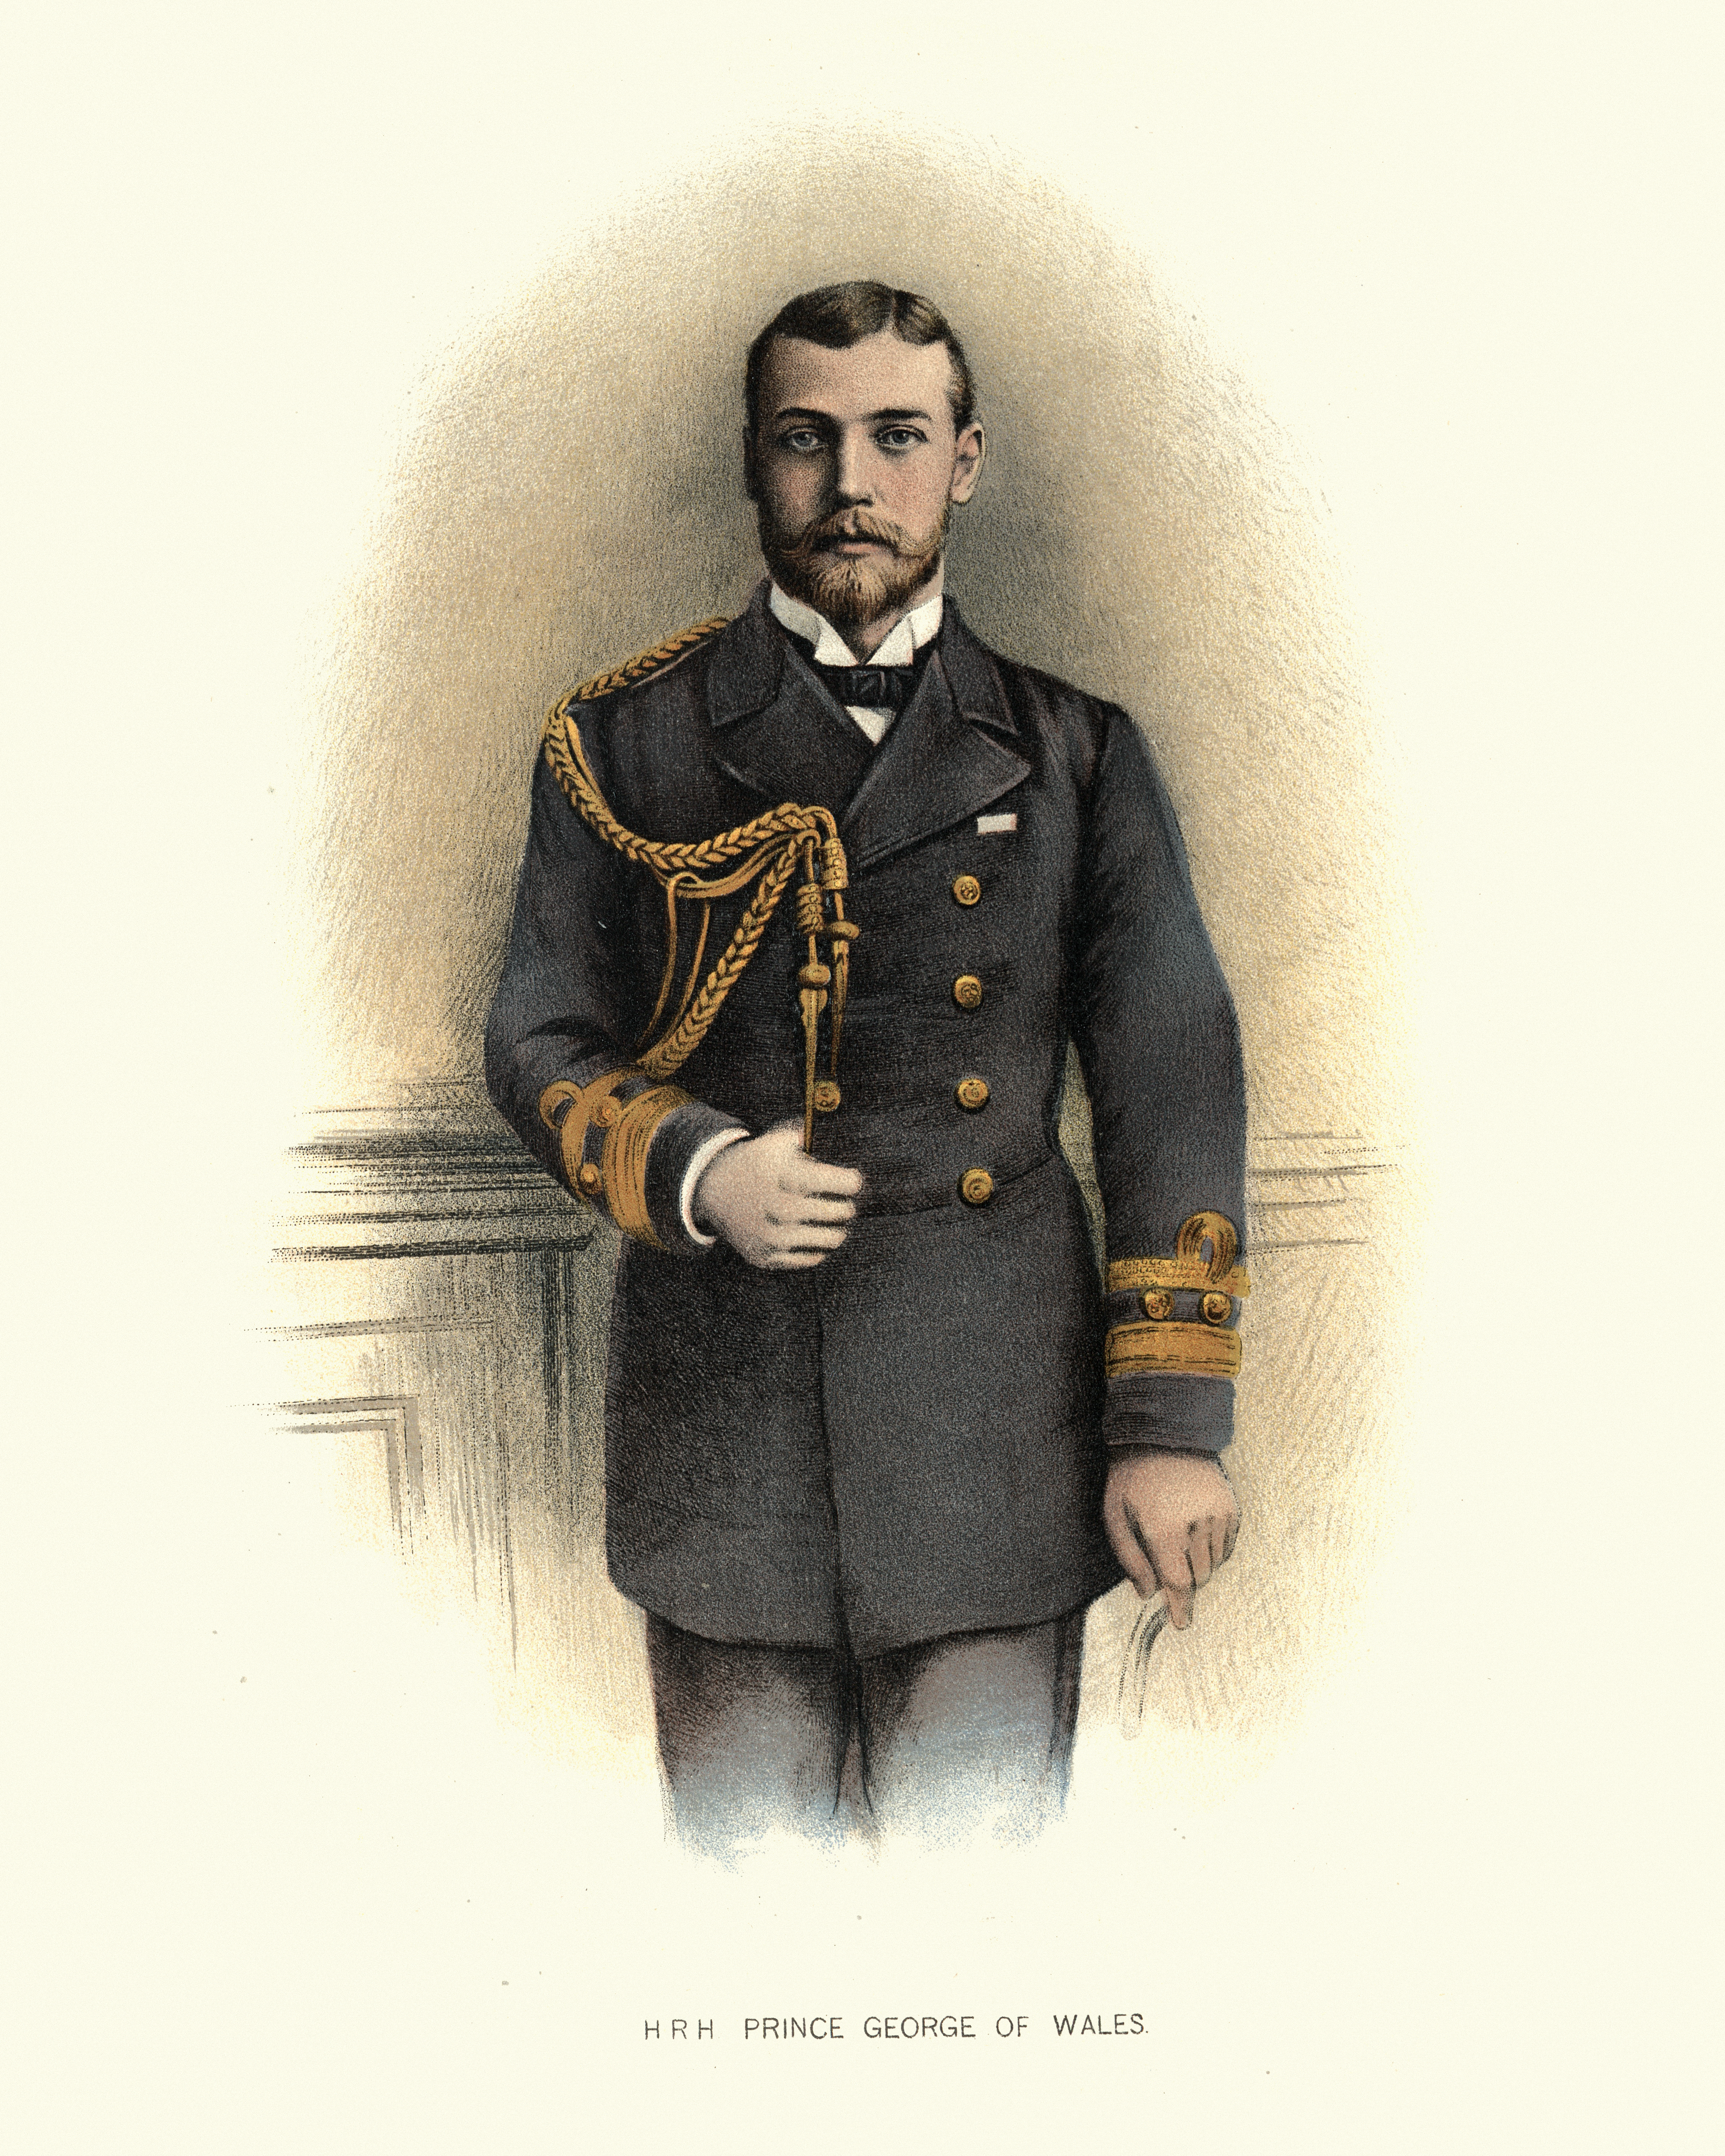 Una ilustración del príncipe George de Gales, con su uniforme de la Royal Navy, antes de convertirse en el rey Jorge V